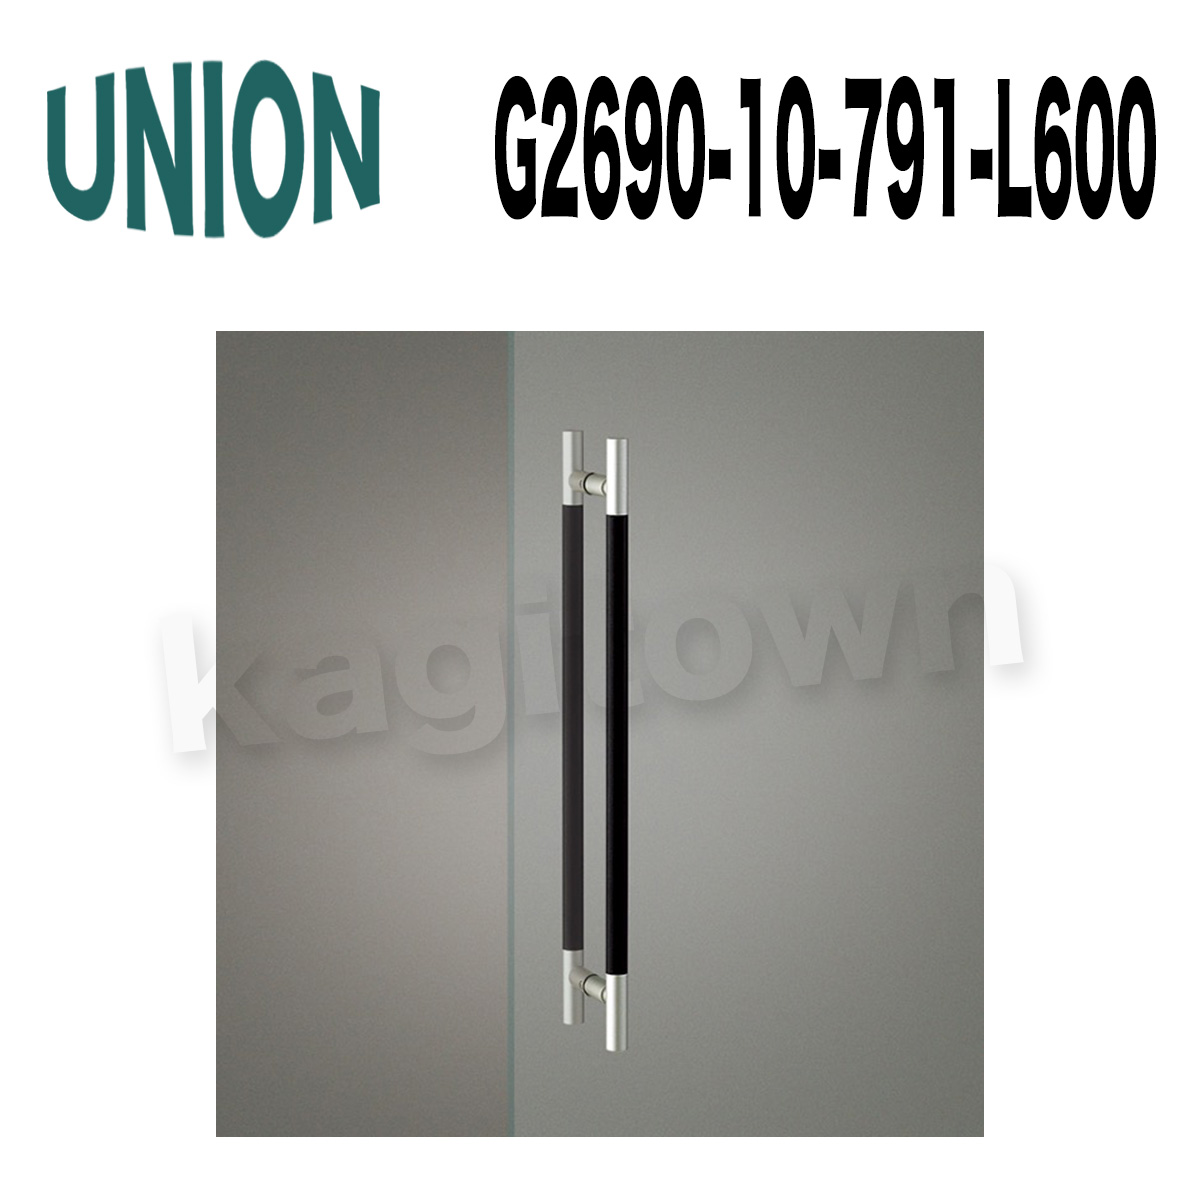 UNION【ユニオン】G2690-10-791-L600[ドアハンドル] 押し棒（内外）